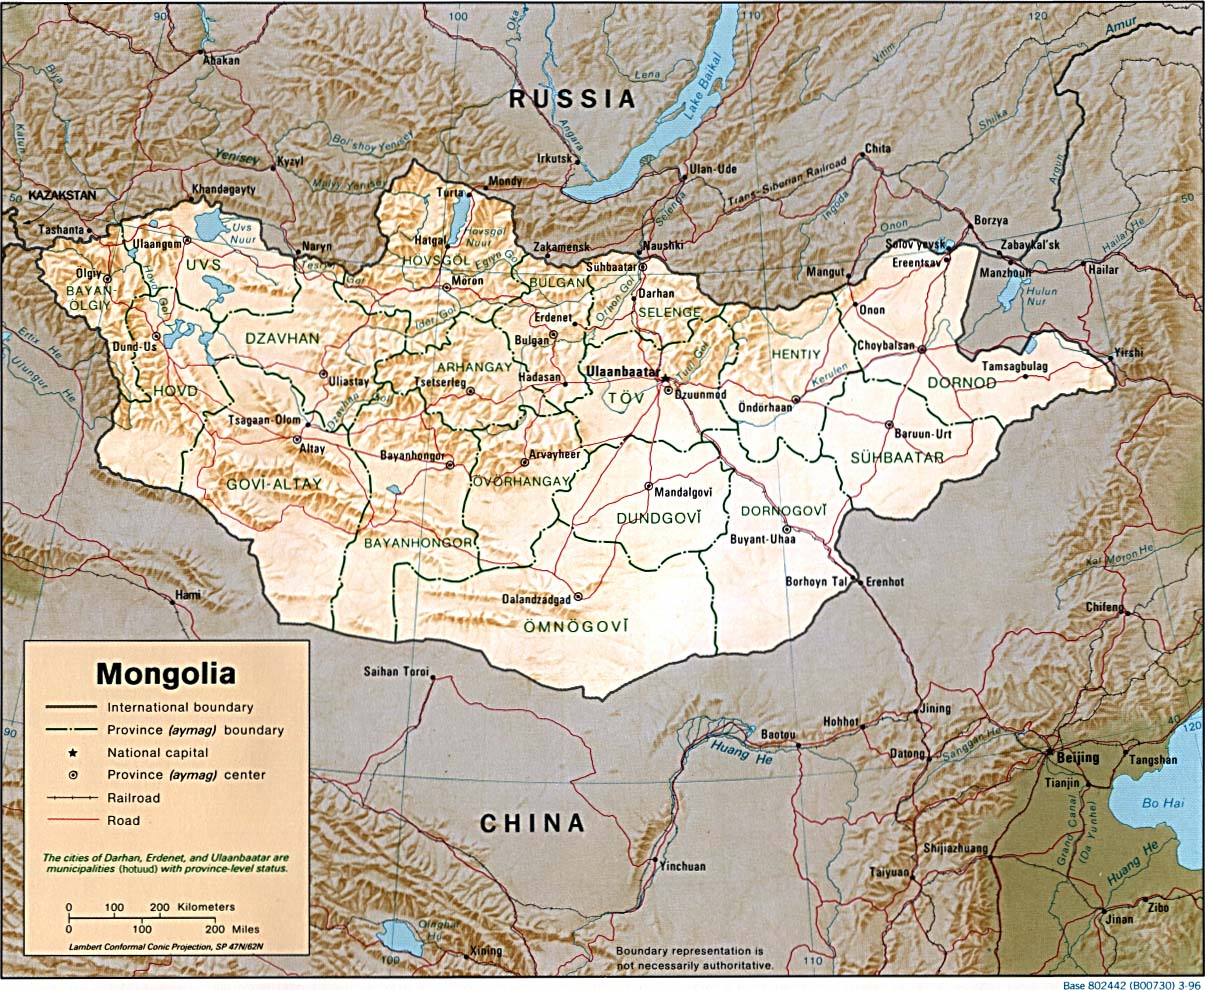 http://www.carte-du-monde.net/cartes/mongolie.jpg